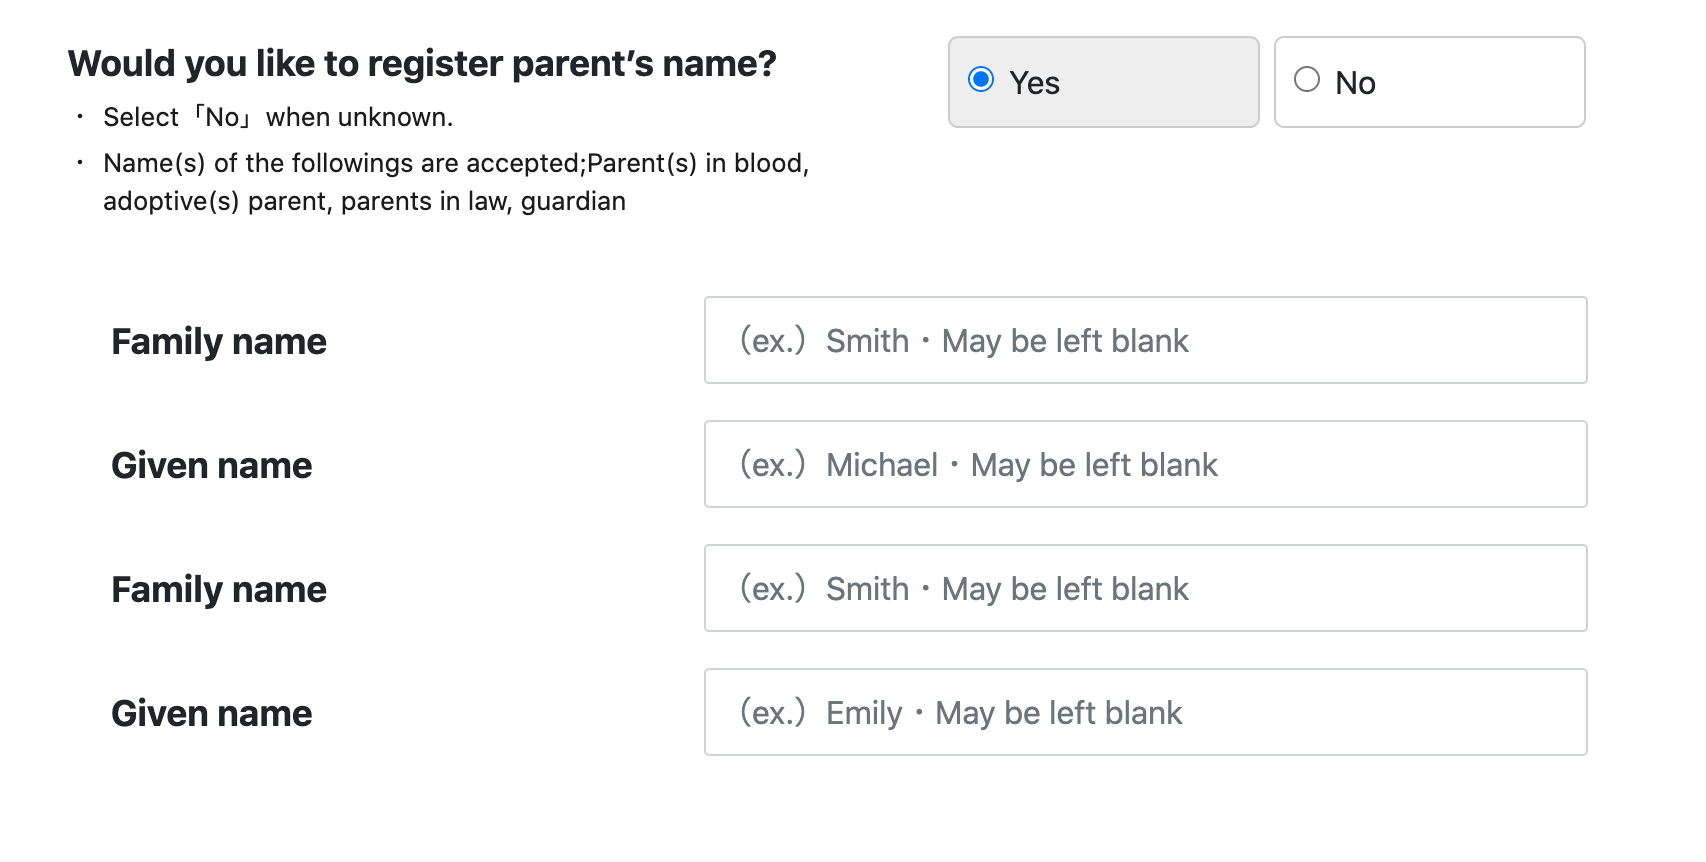 Enter your parents’ names